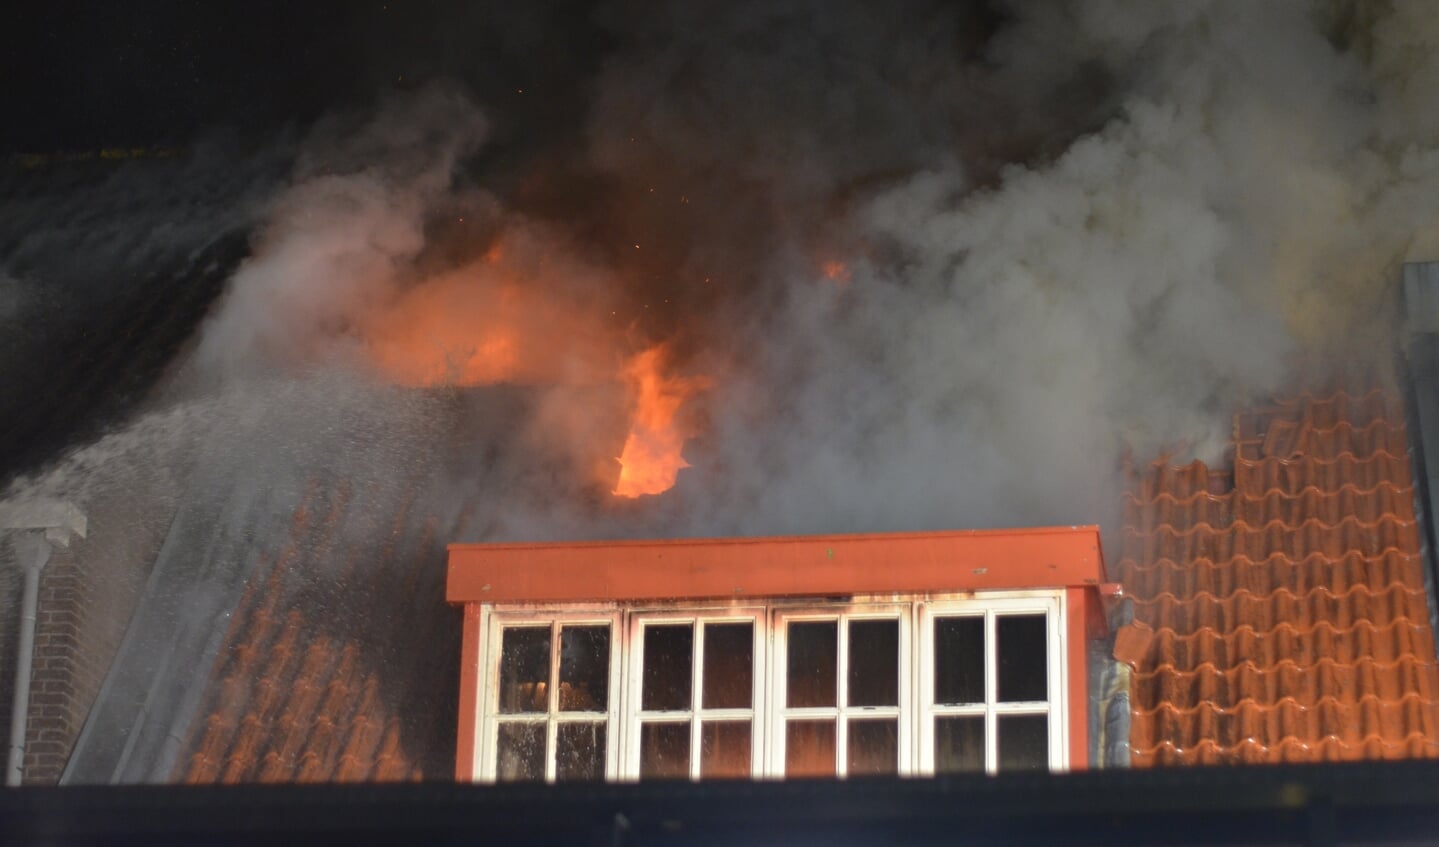 HARMELEN - Zaterdagmorgen 12 september rond 0.15 uur was brand ontstaan in een cafetaria aan de Kalverstraat in Harmelen. De brand is opgeschaald naar grote